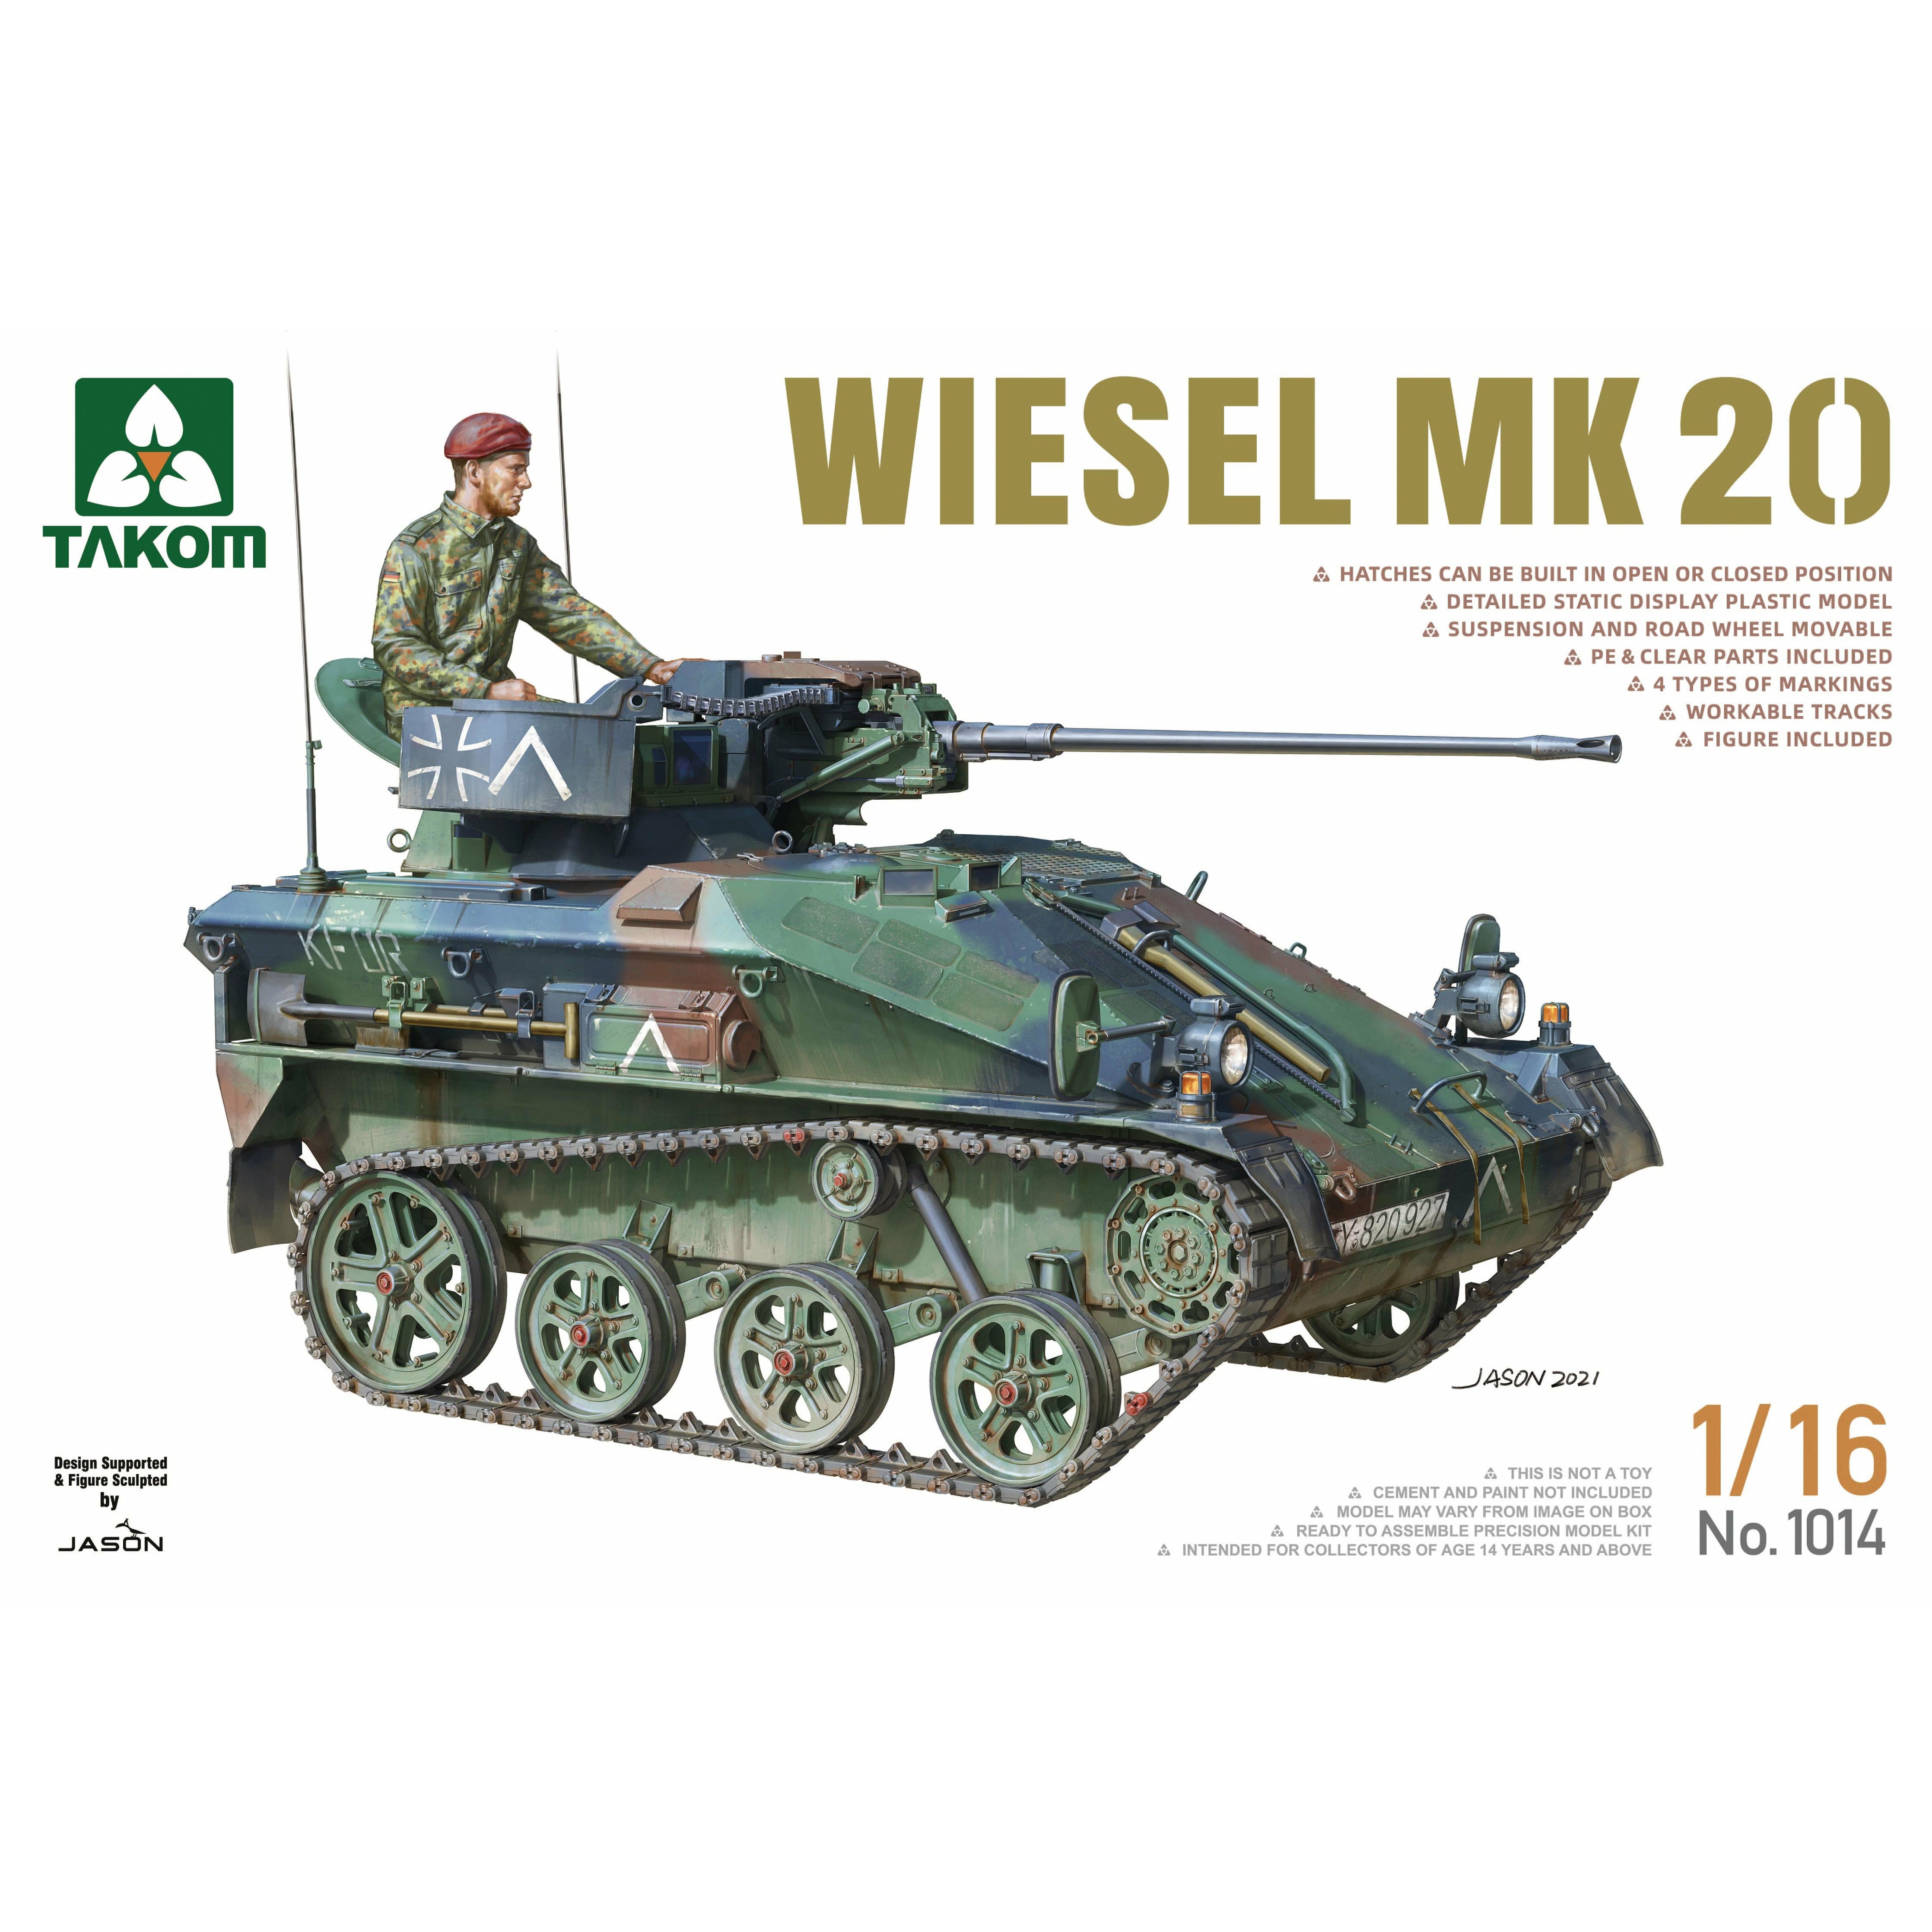 Wiesel MK20 1/16 #1014 by Takom